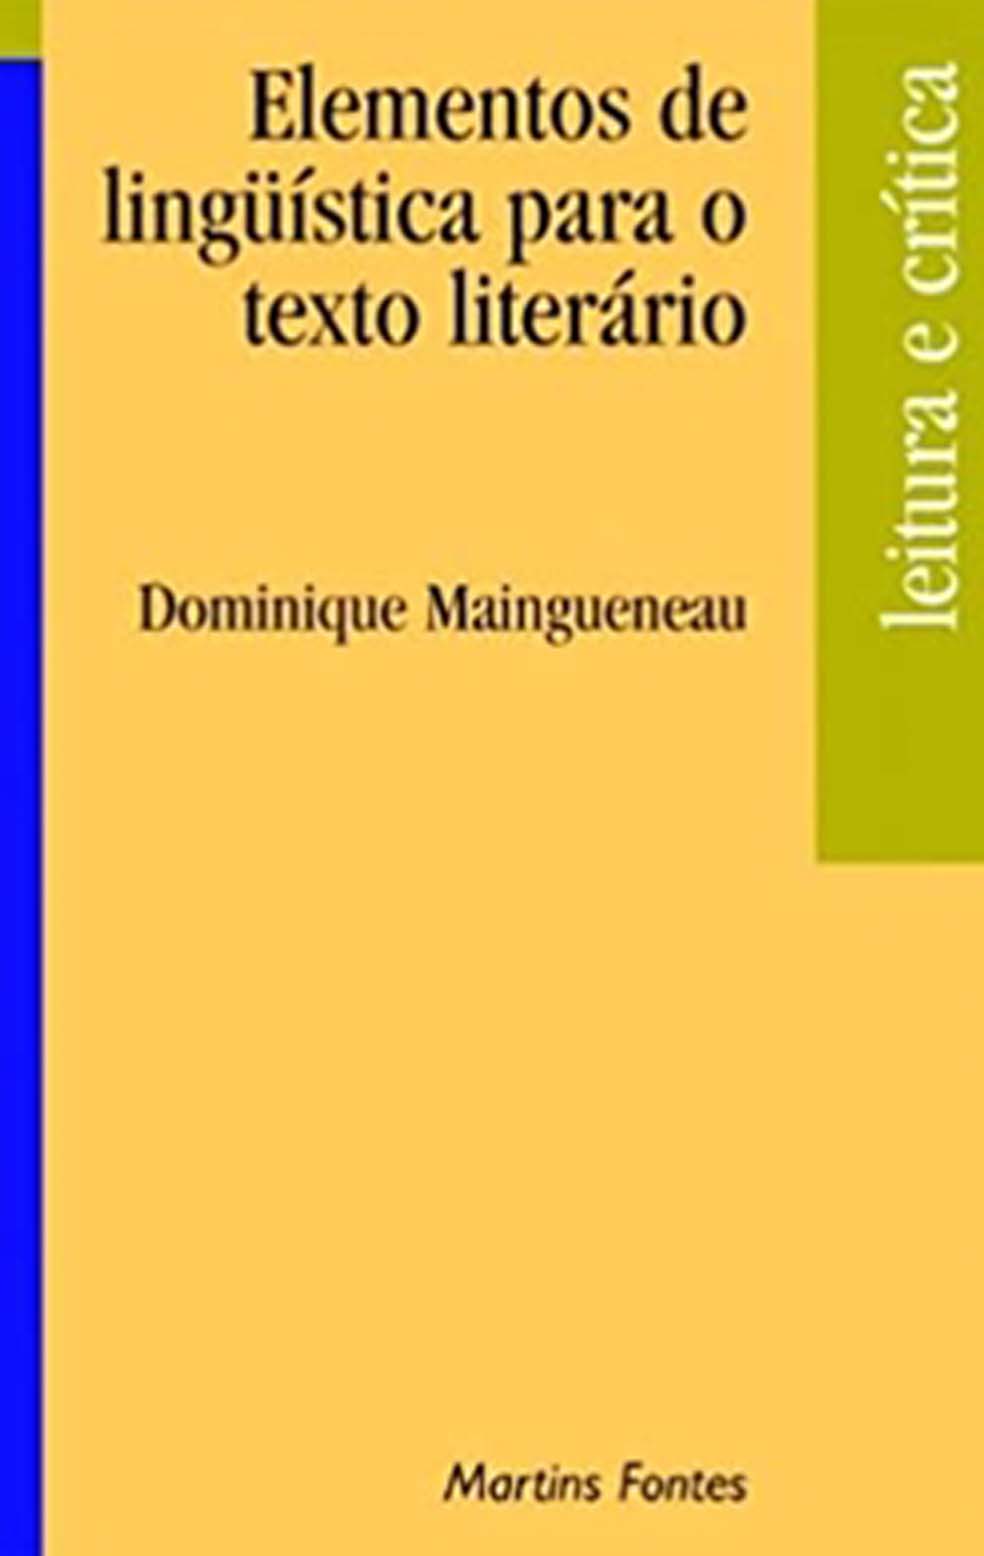 Elementos de linguística para o texto literário  - Martins Fontes